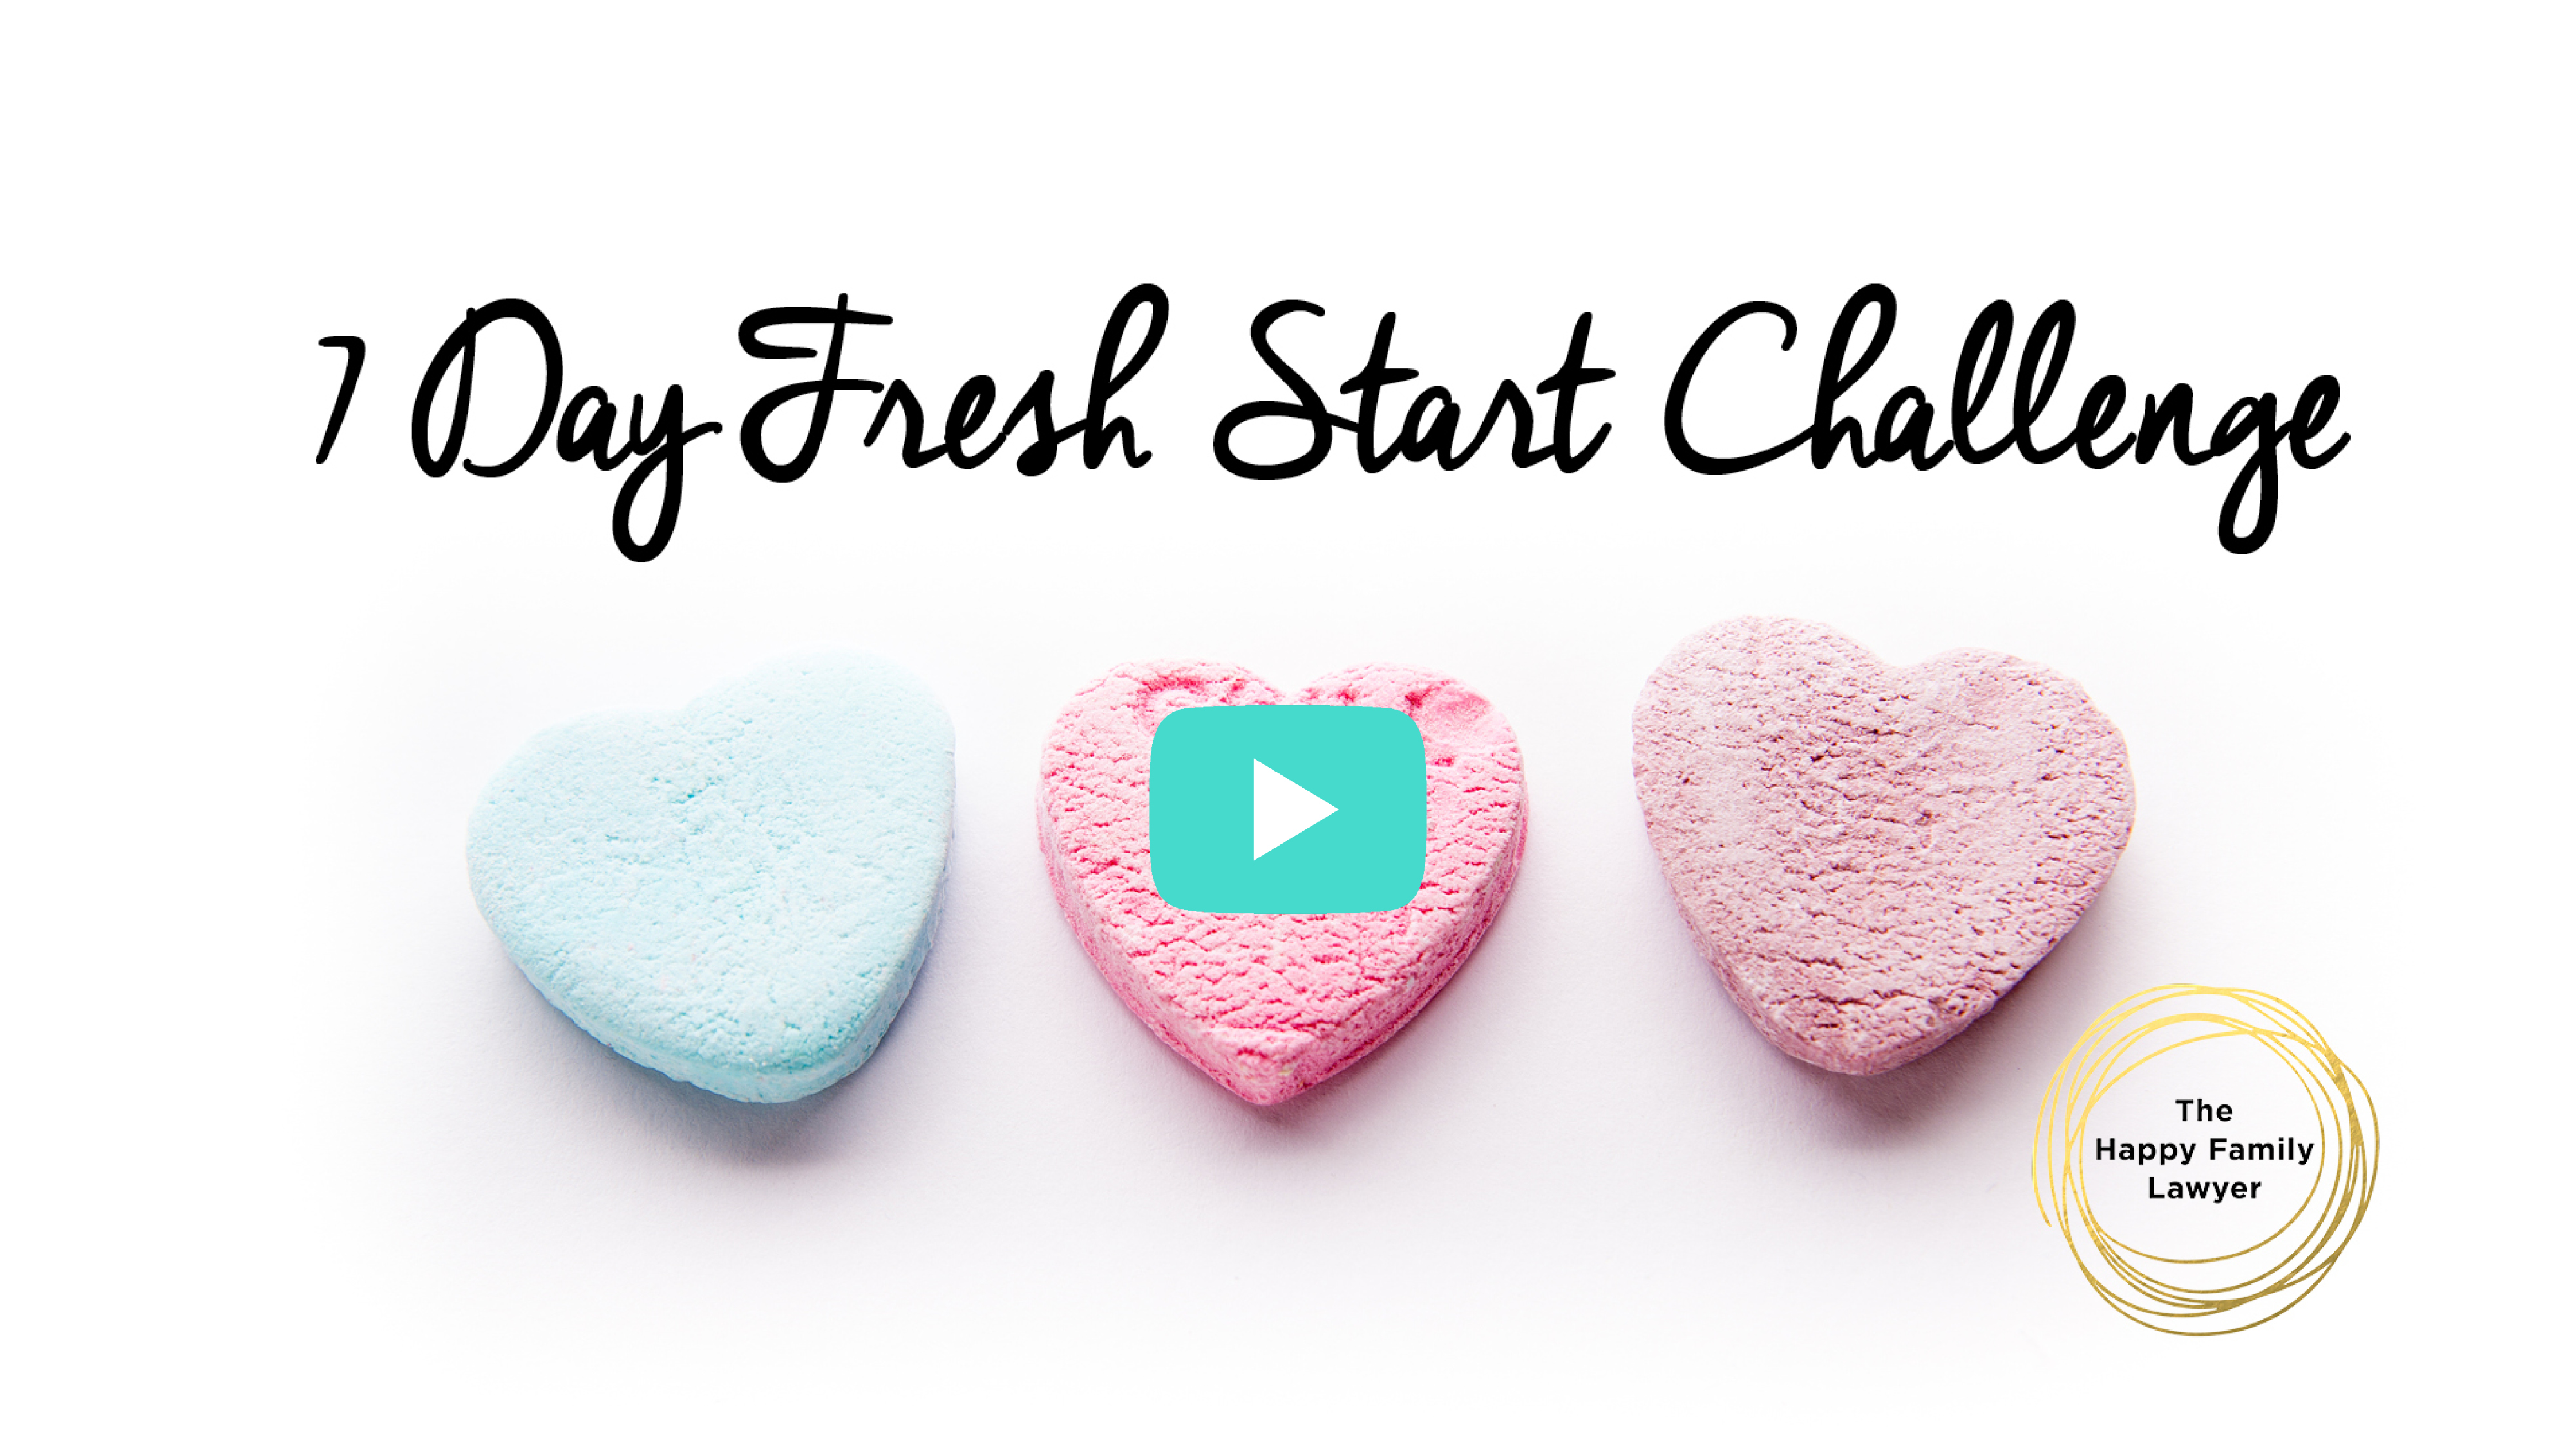 7 Day Fresh Start Challenge